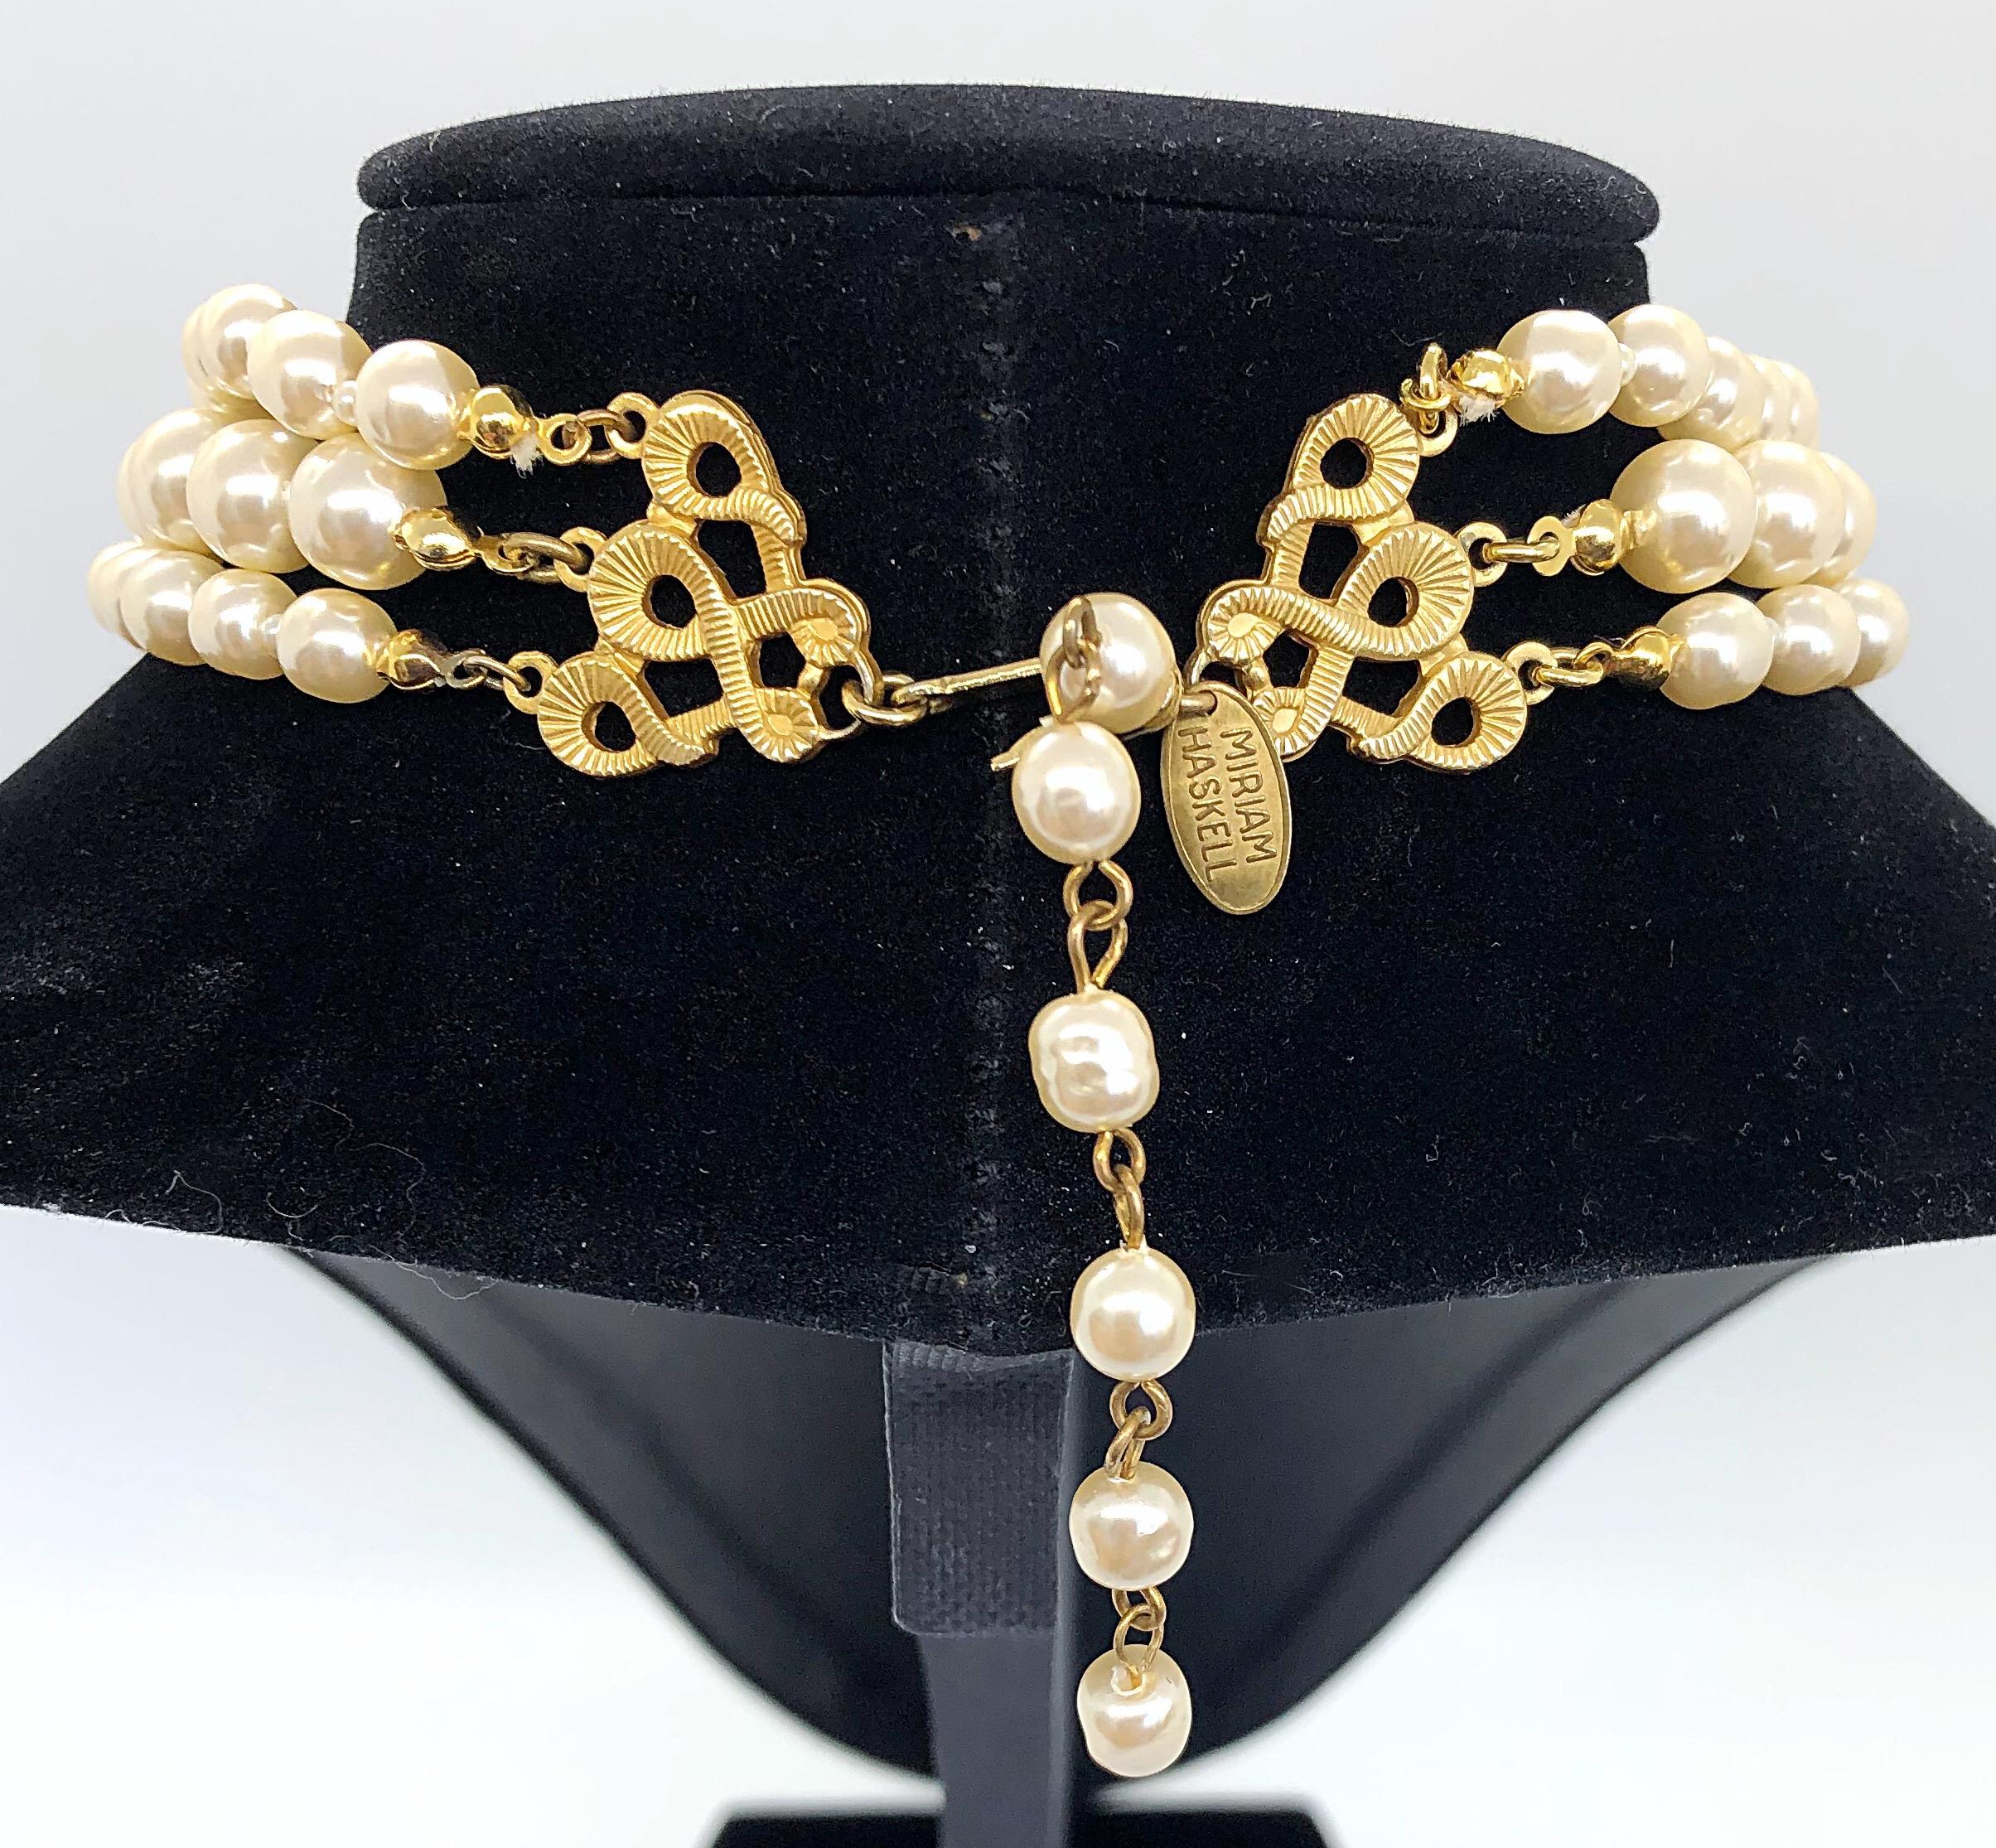 Spectaculaire collier ras du cou vintage des années 50 signé MIRIAM HASKELL à trois rangs de fausses perles d'eau douce ! Comprend trois rangs de perles graduées de couleur ivoire. Le pendentif central est une grande fleur embellie par des perles de